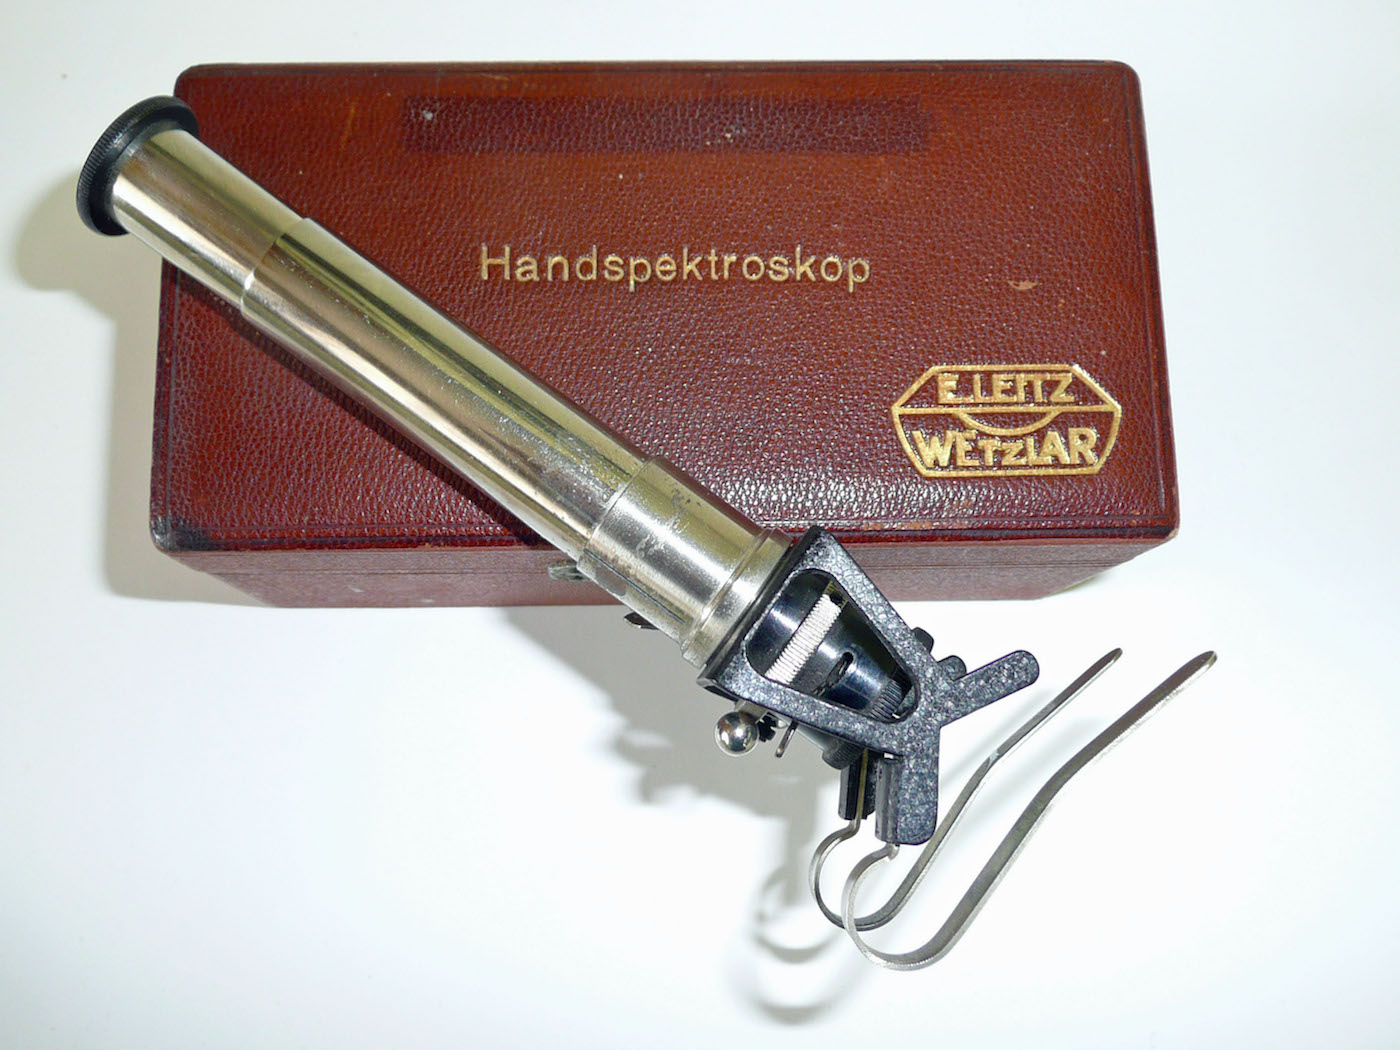 Hand spectroscope - Ernst Leitz, Wetzlar